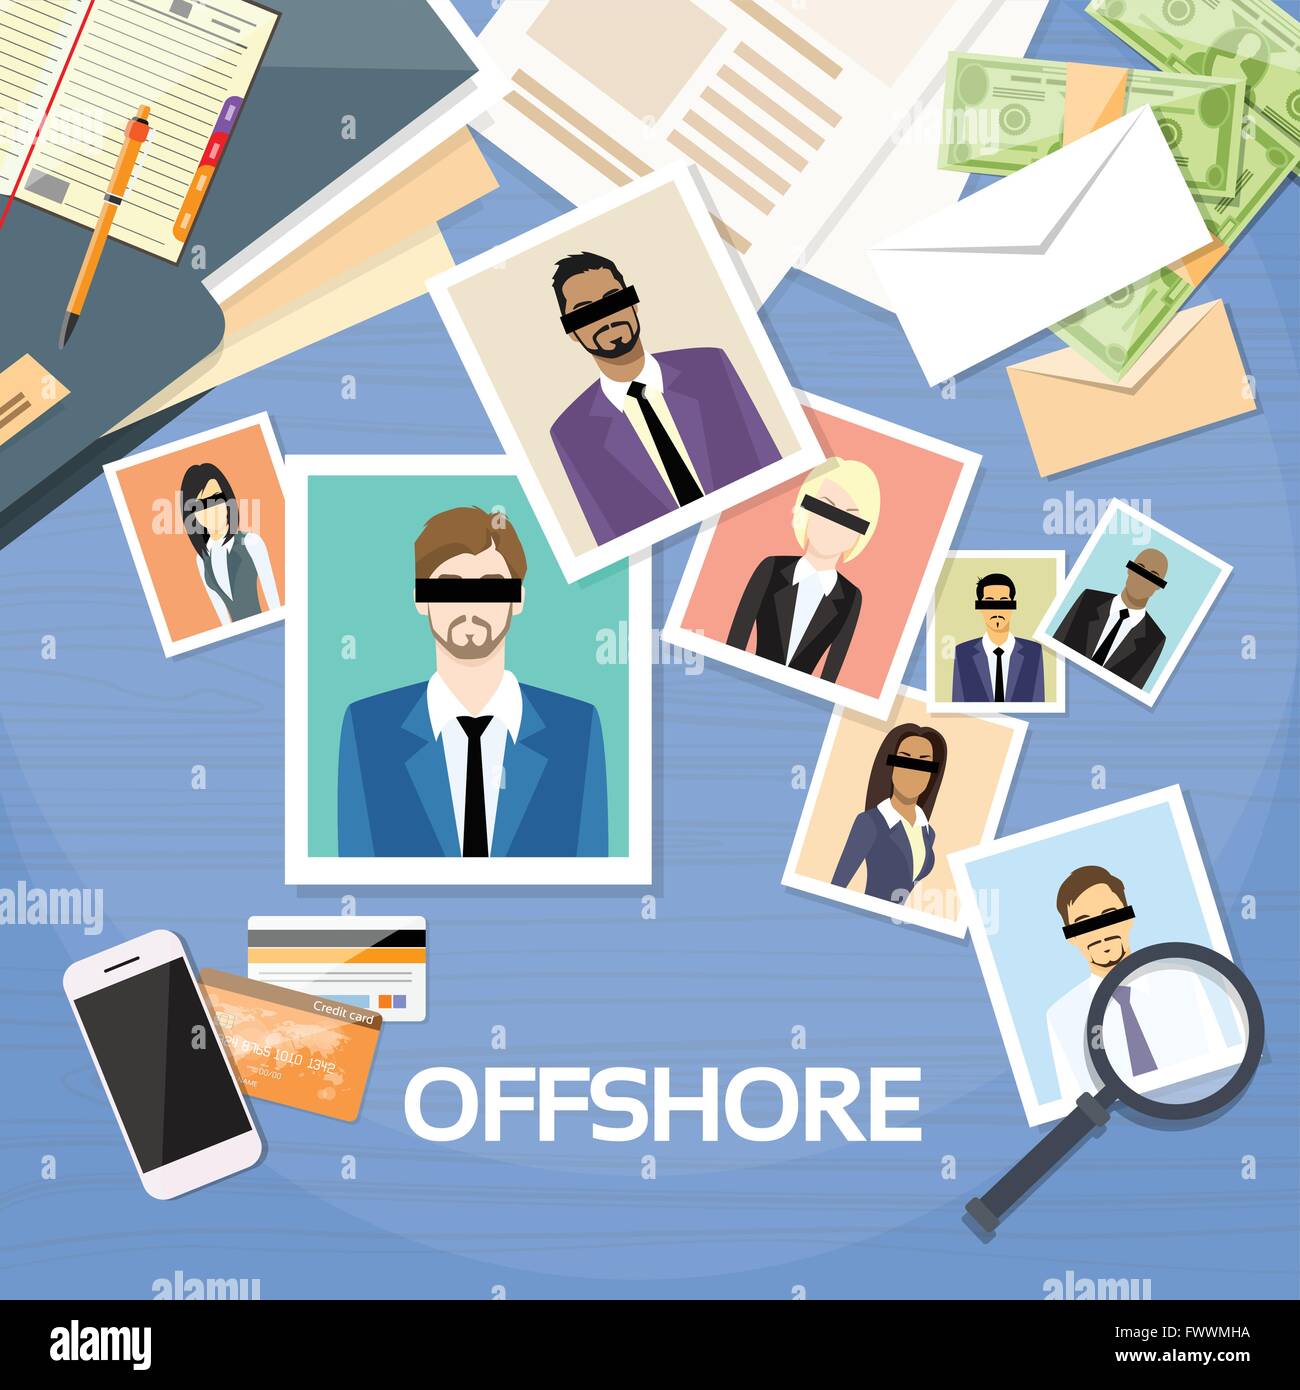 Carte Offshore Documenti Company la gente di affari foto Illustrazione Vettoriale